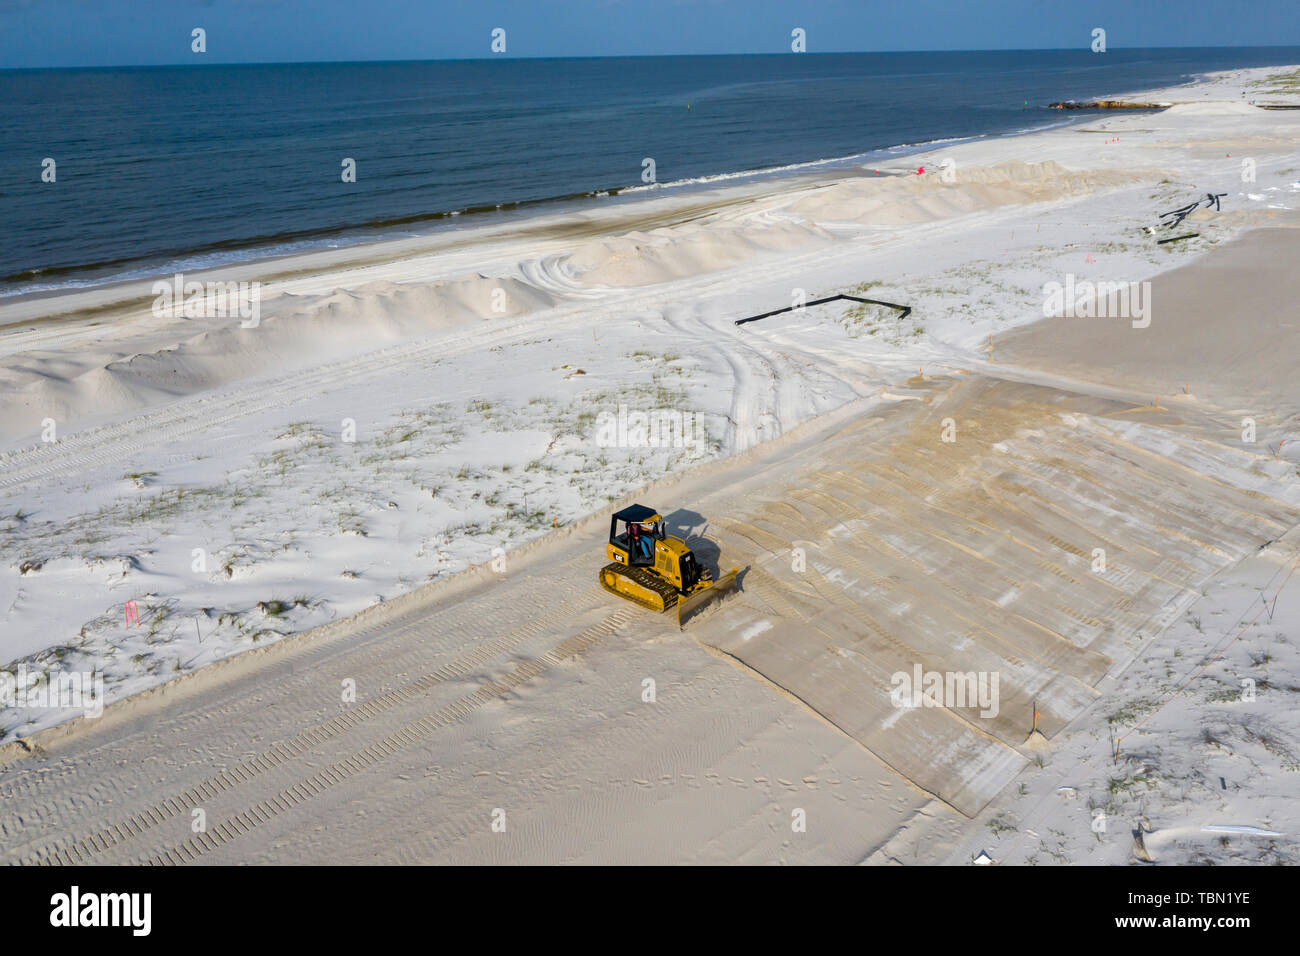 Mexiko Strand, Florida - eine Planierraupe arbeitet der Strand wieder sieben Monate nach dem Hurrikan Michael das Florida Panhandle. Stockfoto